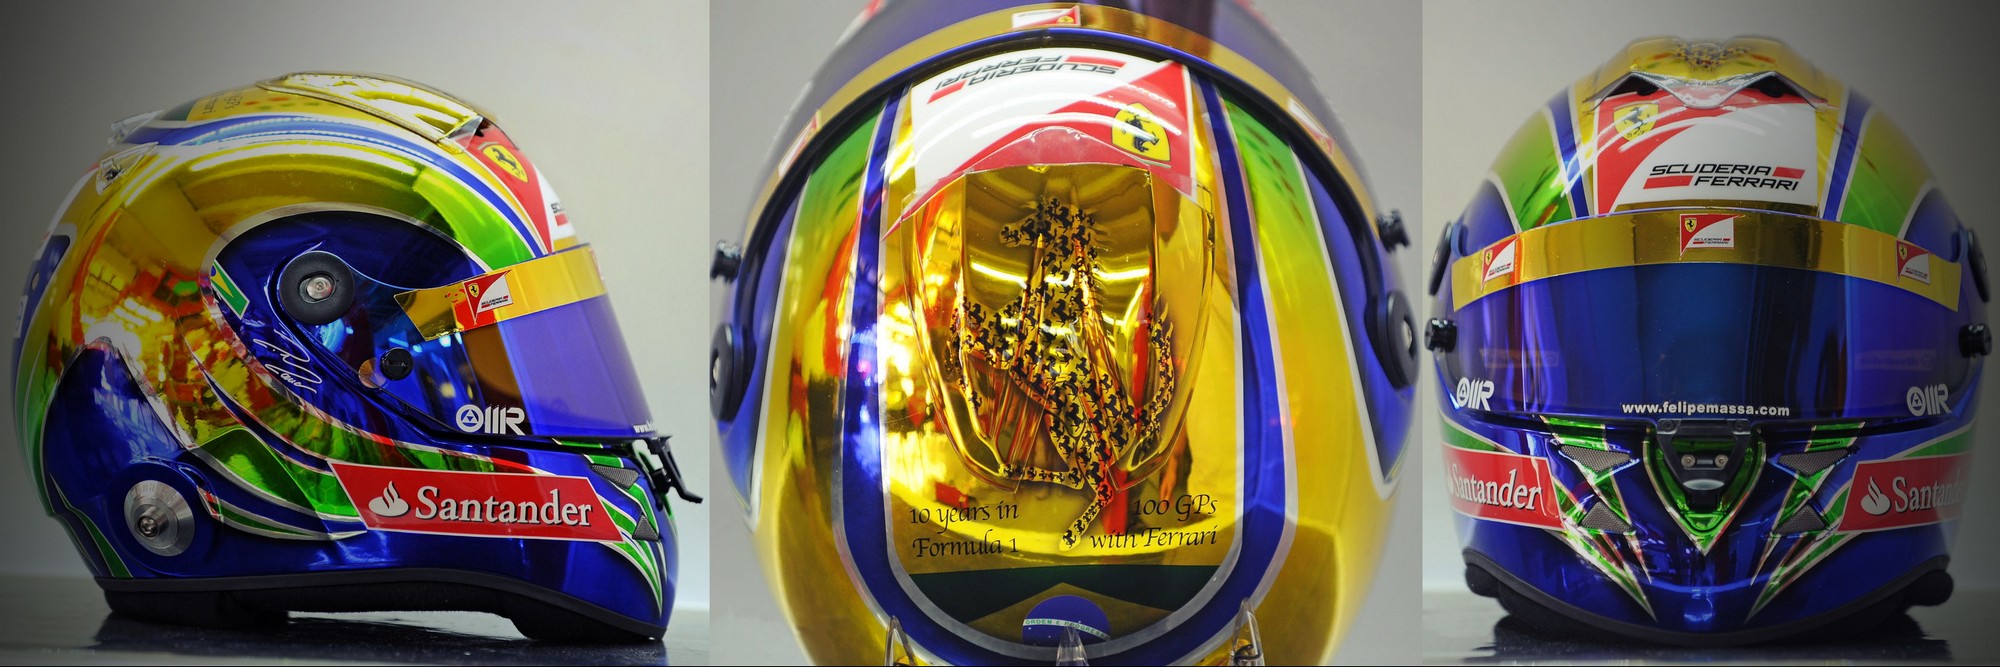 Шлем Фелипе Массы на Гран-При Бразилии 2011 | 2011 Brazilian Grand Prix helmet of Felipe Massa